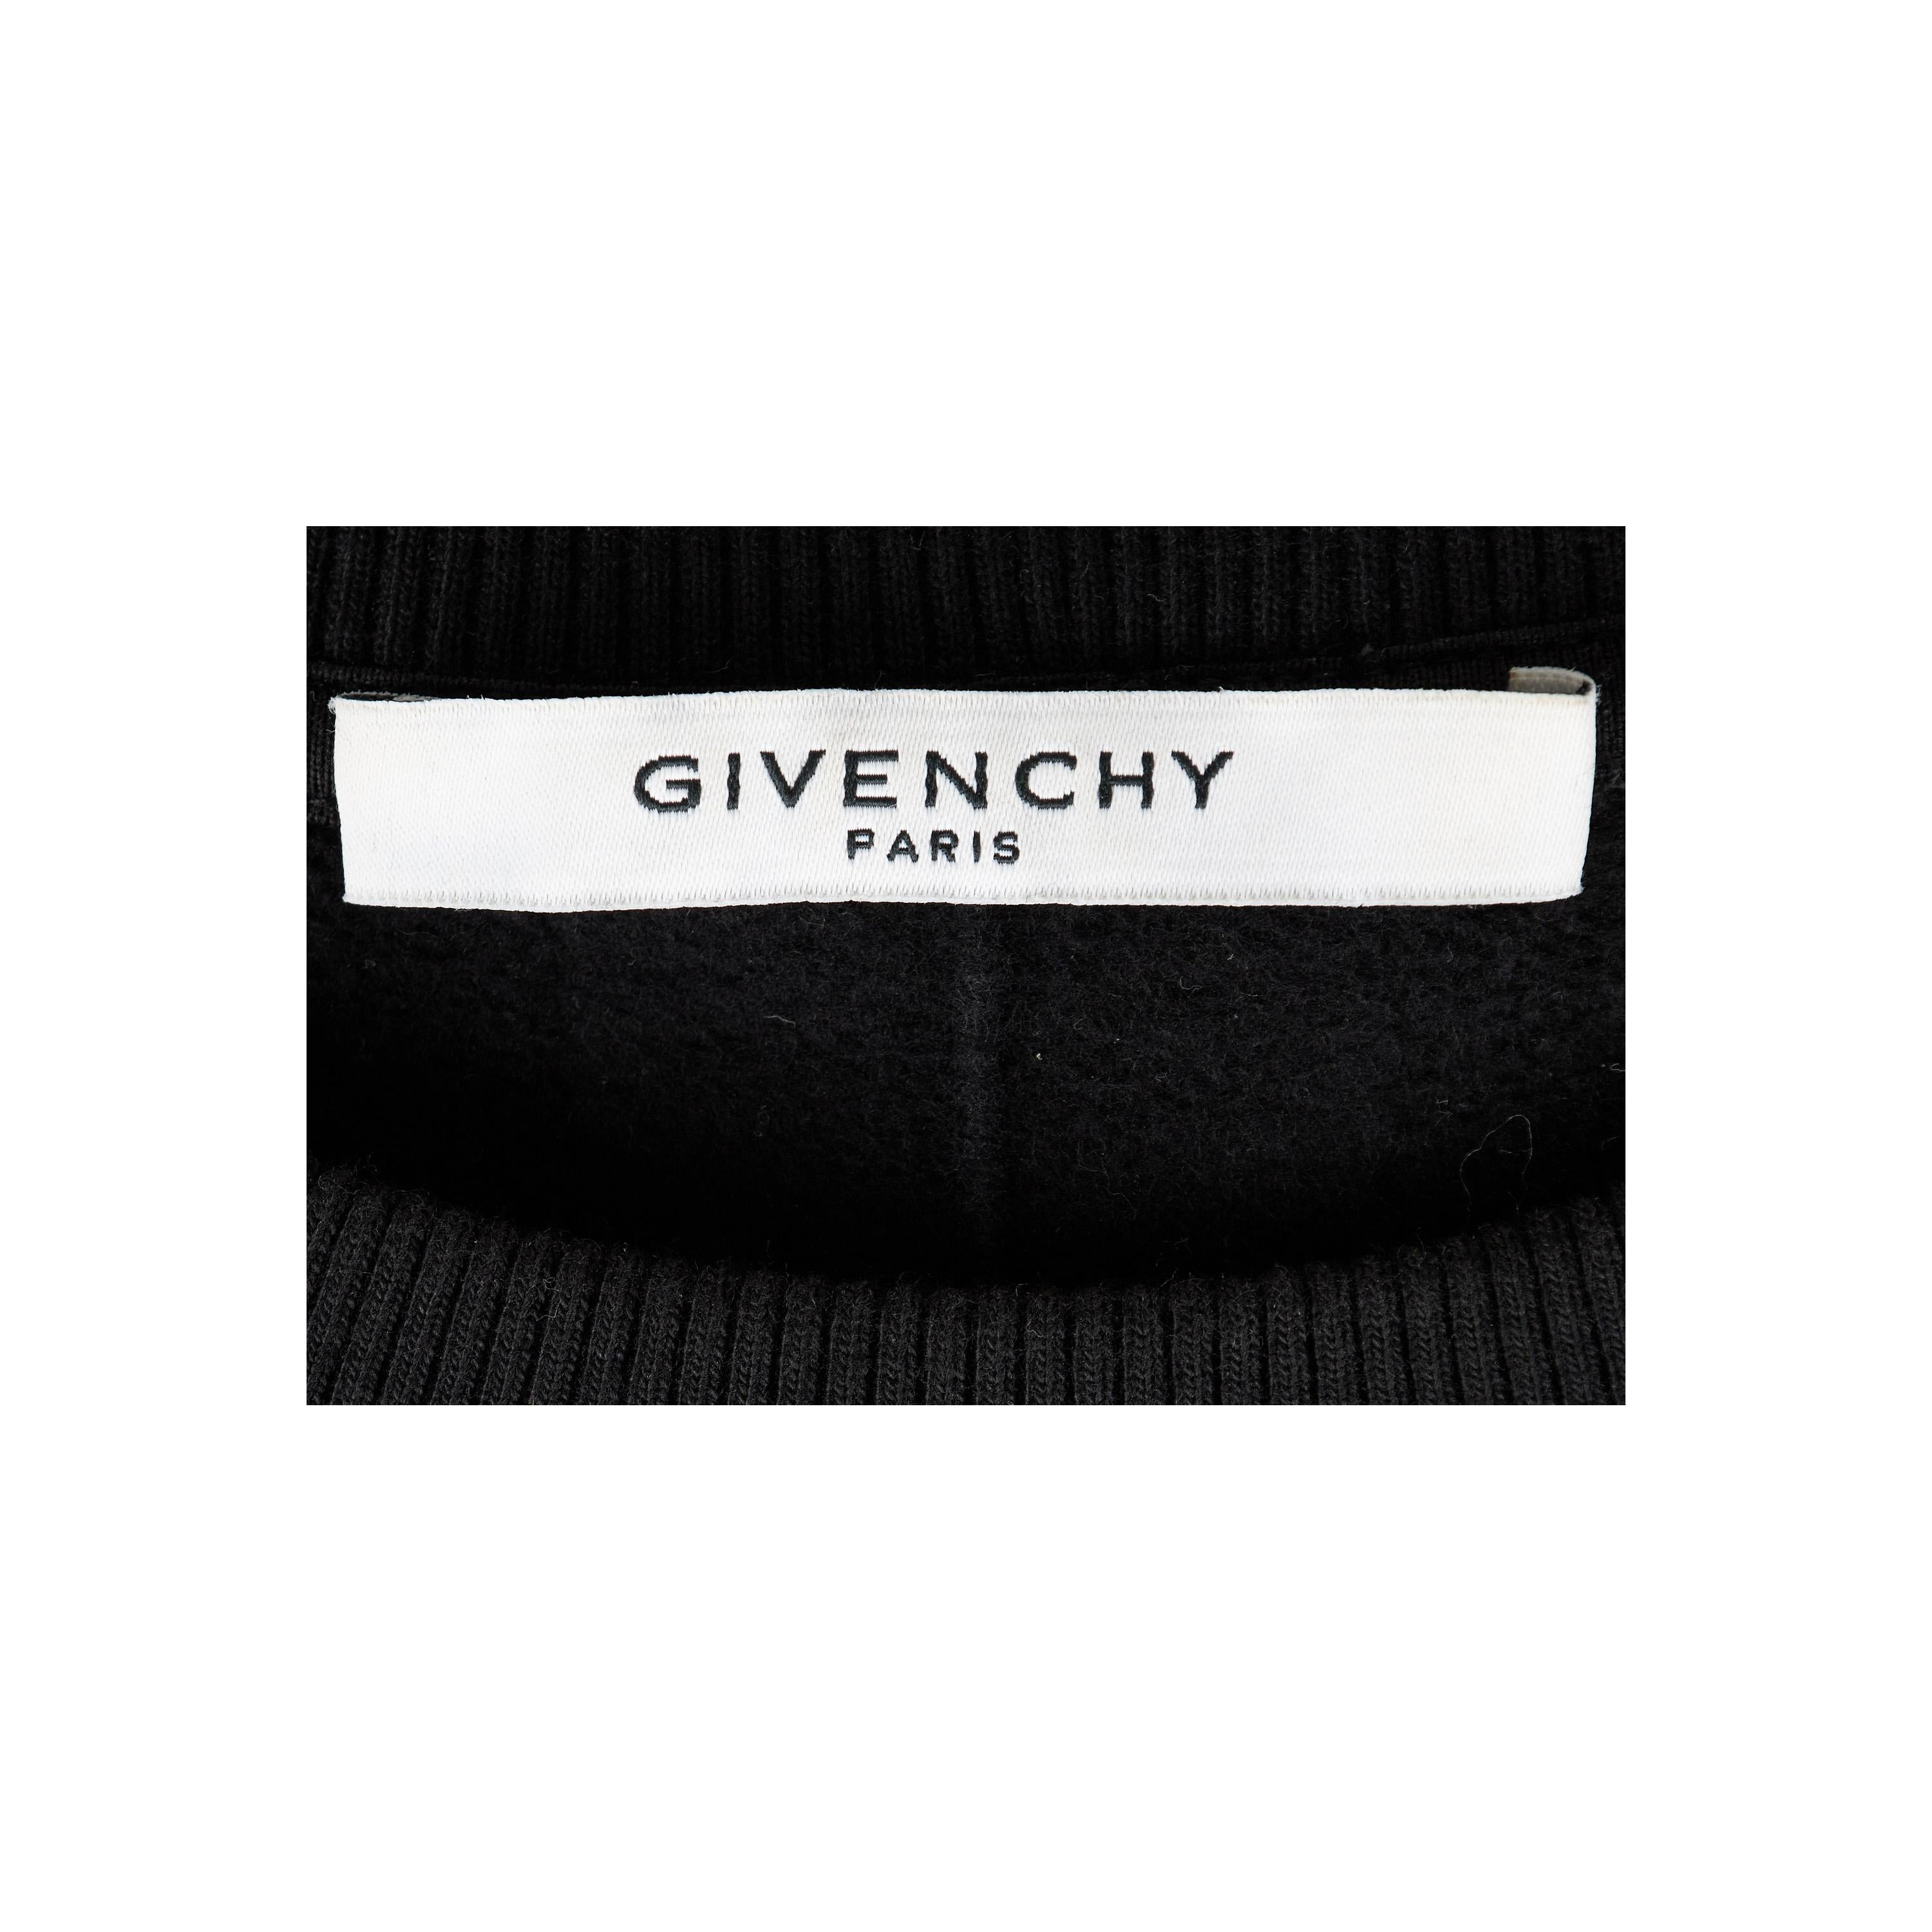 Dieser Pullover von Givenchy ist aus Baumwolle gefertigt und bietet lang anhaltenden Komfort. Es hat eine einzigartige Silhouette mit übergroßer Passform, Rundhalsausschnitt, langen Ärmeln und gerippten Bündchen und Saum. Das weiße Patch-Detail